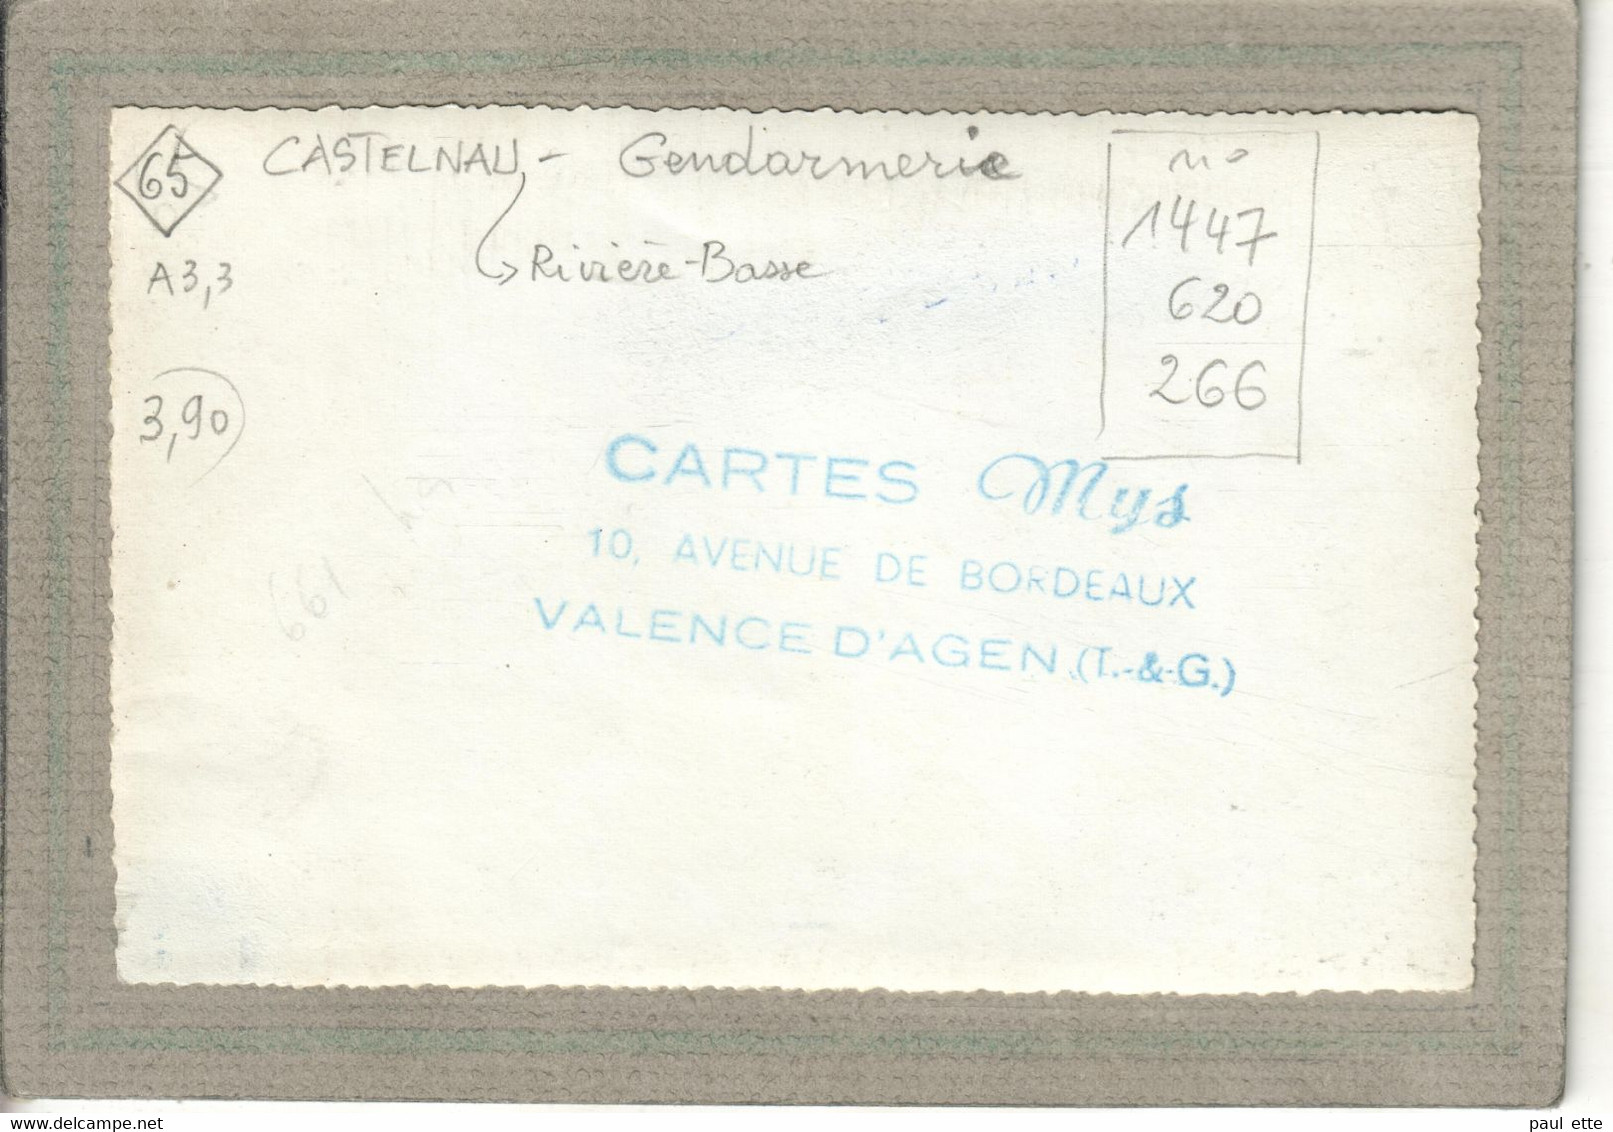 CPA - (65) CASTELNAU-RIVIERE-BASSE - Carte-Photo Souple - Aspect De La Gendarmerie Nationale Dans Les Années 50 / 60 - Castelnau Riviere Basse